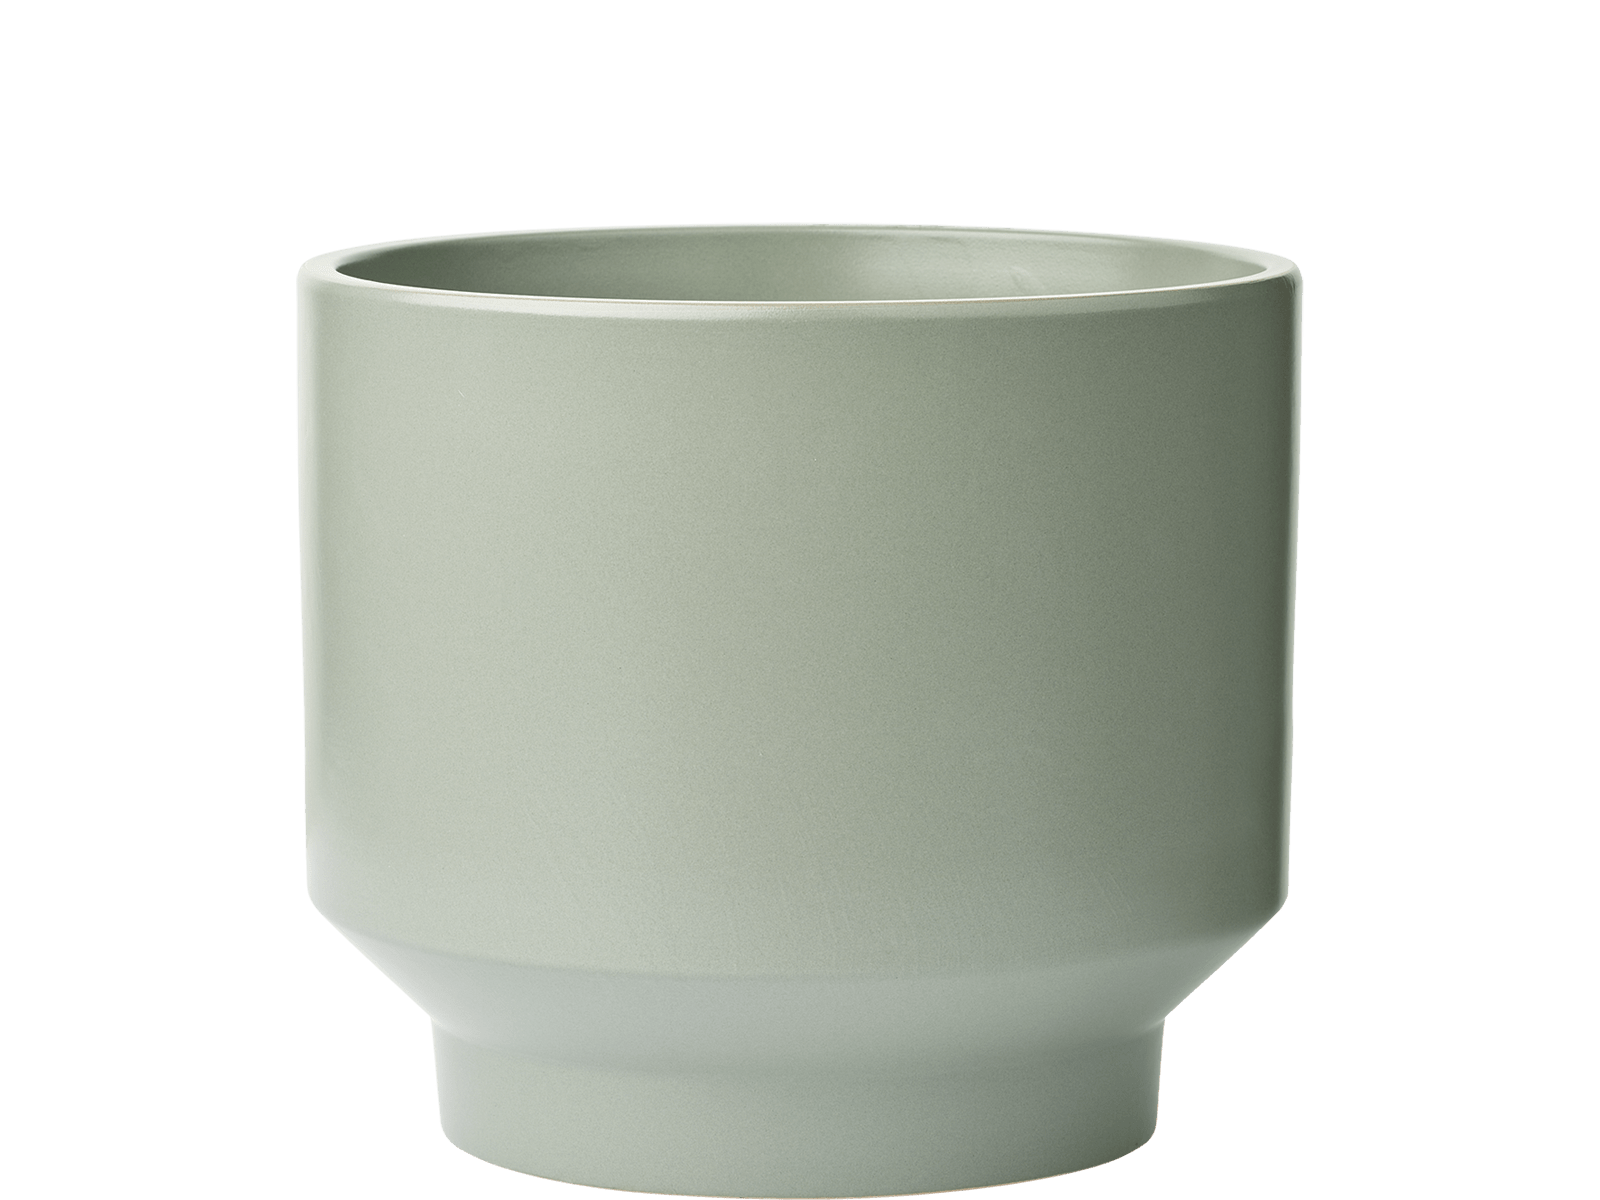 bolia-gap-flowerpot-O32xH28-cm-dust-green-gap-kaspo-pasztellzold